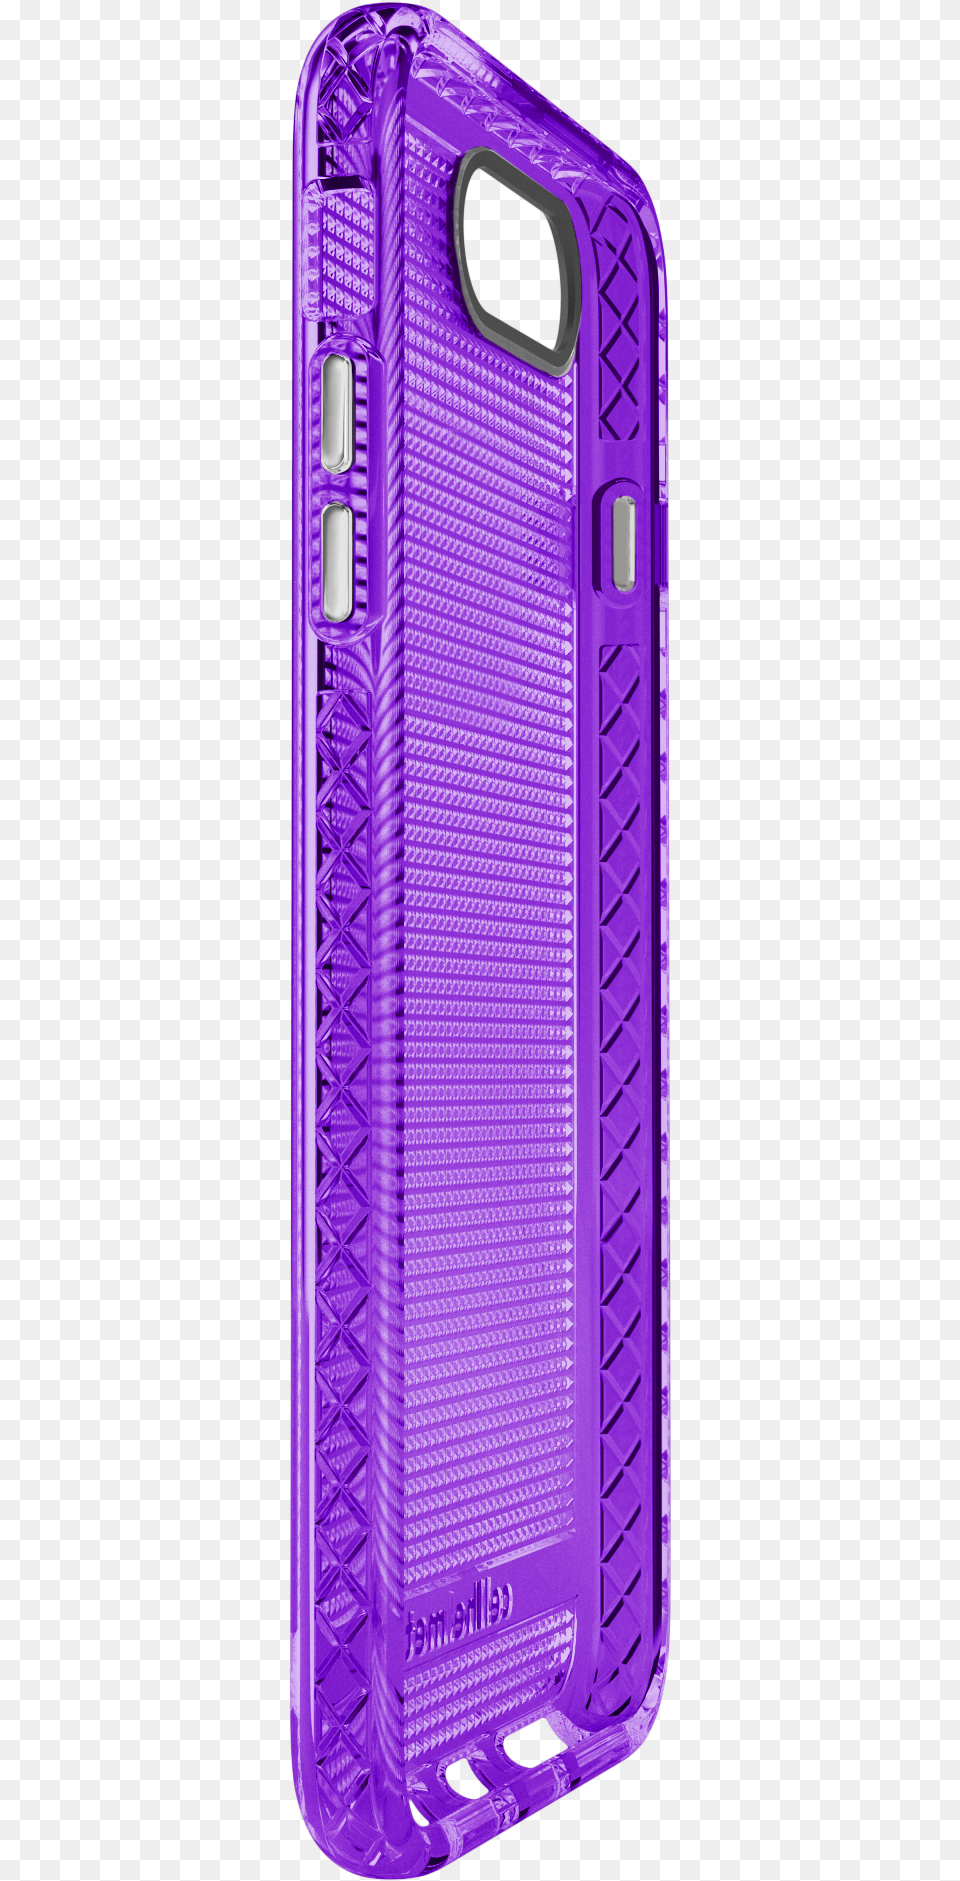 Cellhelmet Altitude X Purple Case For Iphone 678 Iphone 6 7 8 Purple Case, Electronics, Mobile Phone, Phone Free Transparent Png